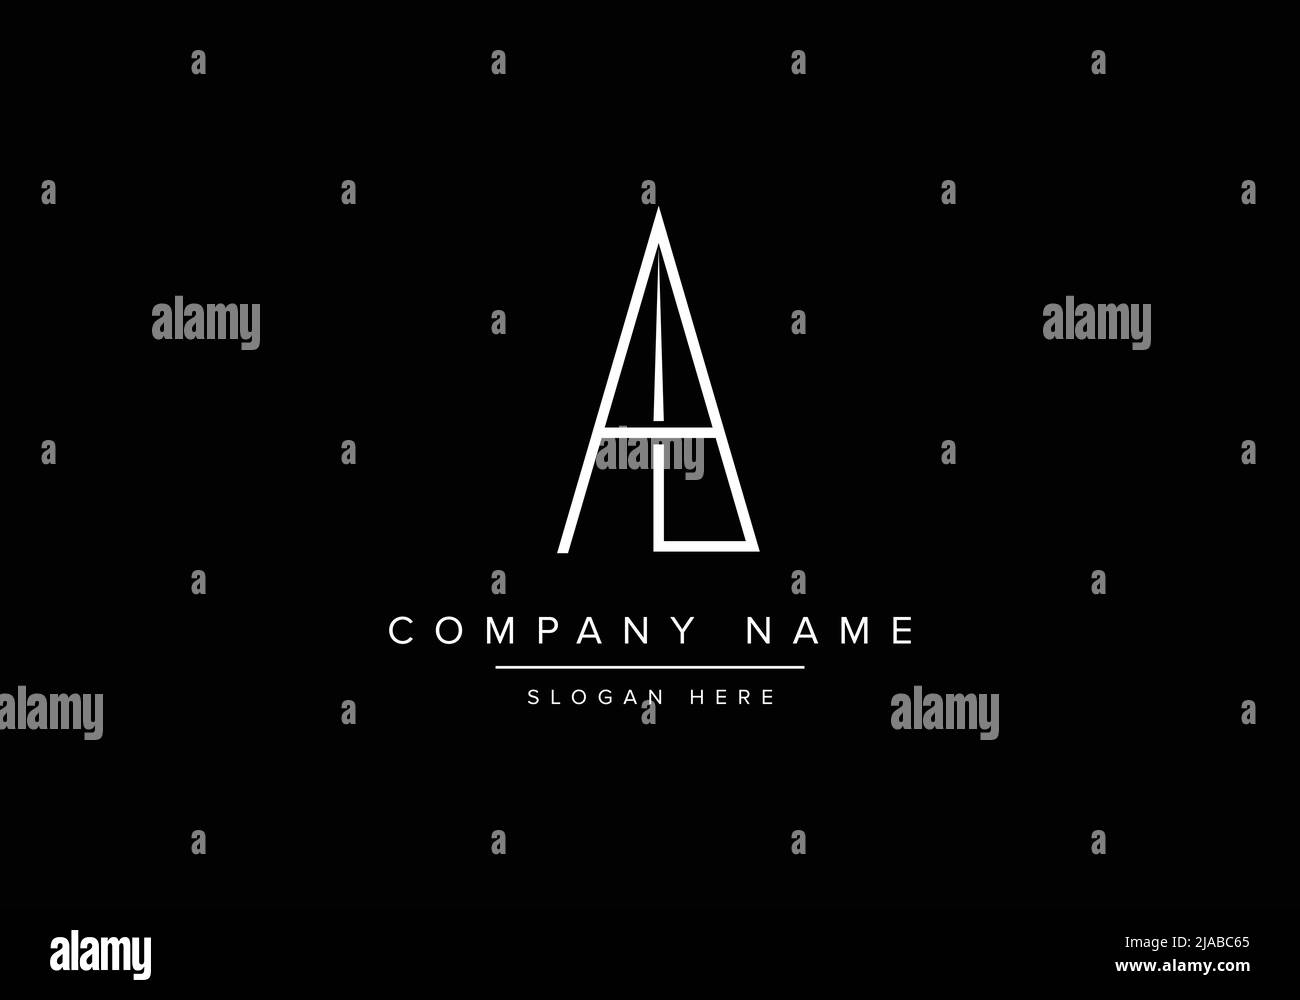 Alphabet AL logo design, Creative vector logo icon design concept for business or company identity Stock Vector